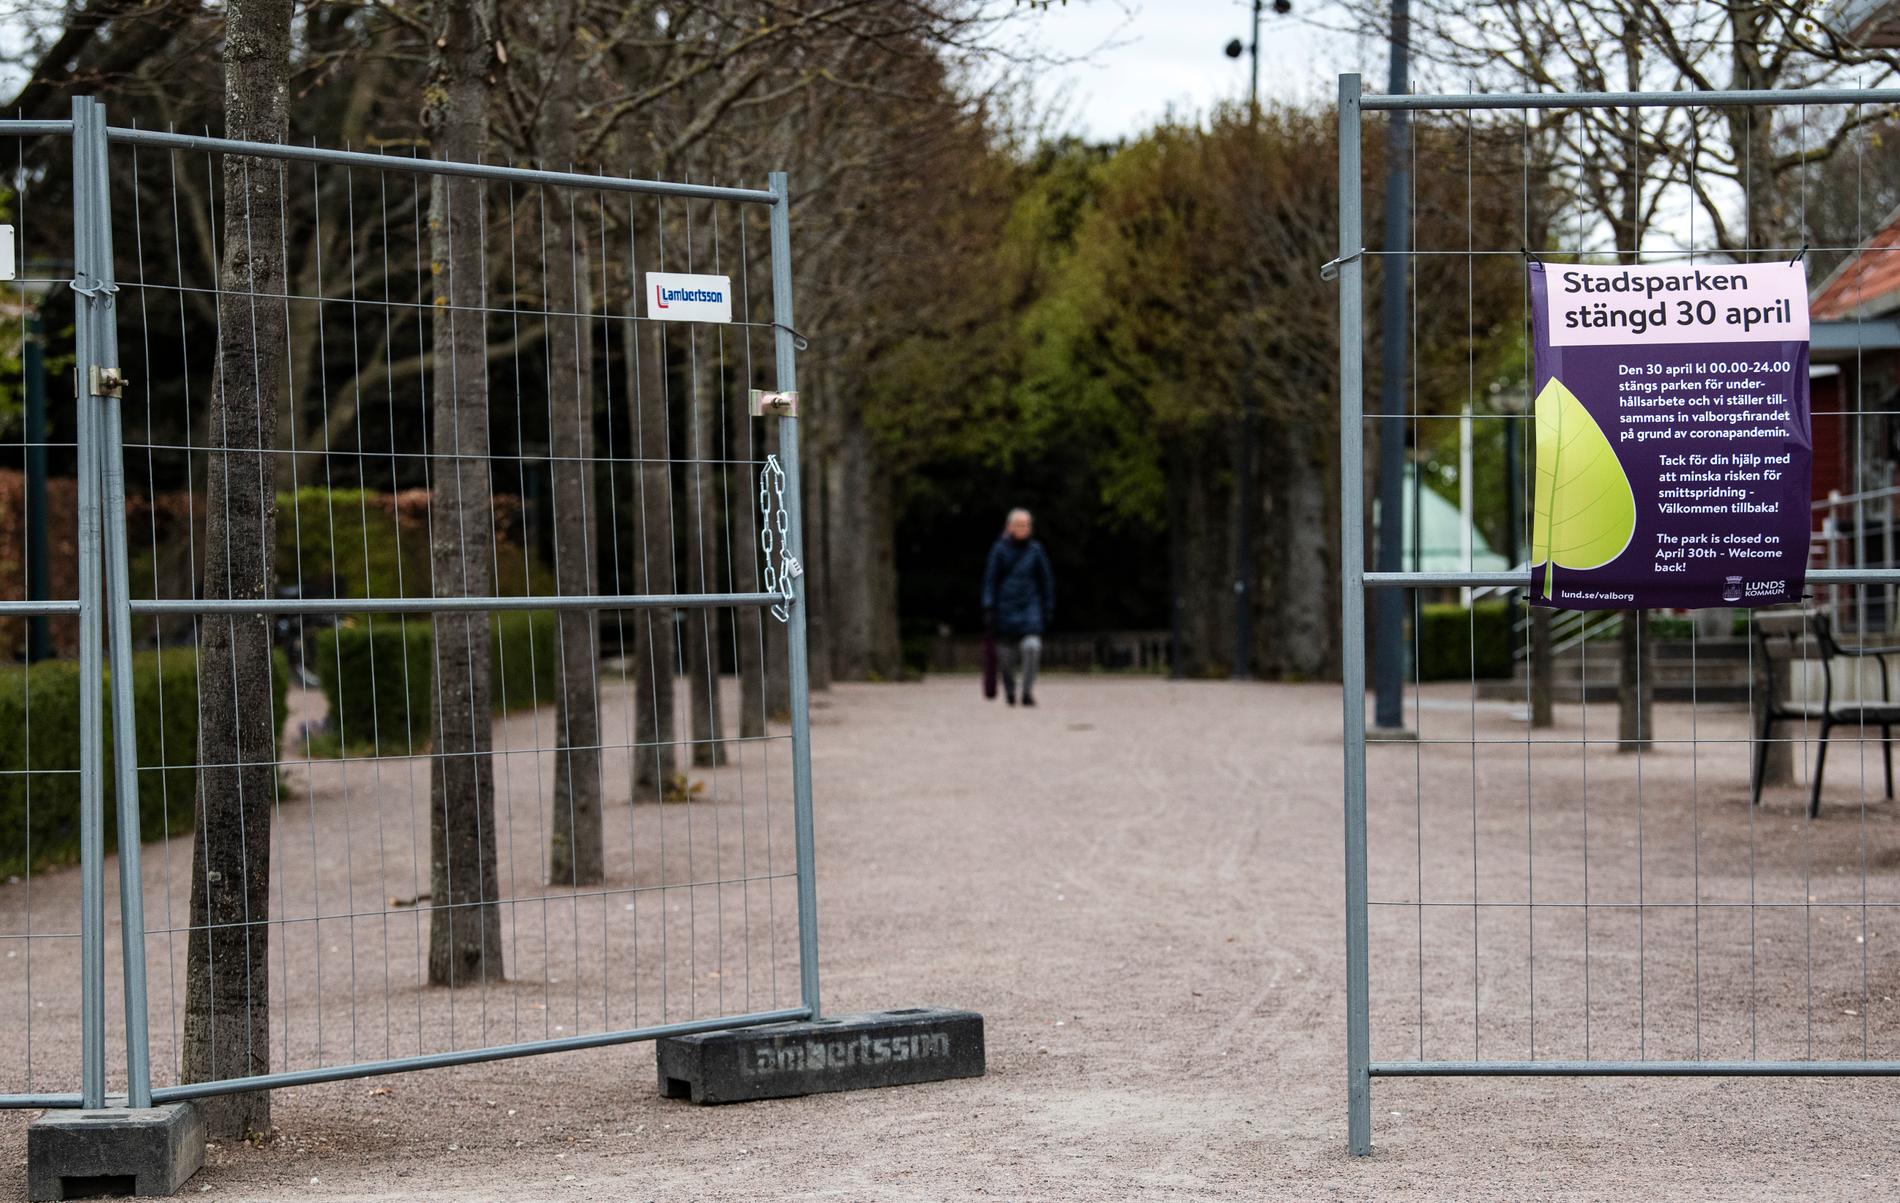 Stadsparken i Lund var stängd och nygödslad med hönsbajs under valborg 2020.